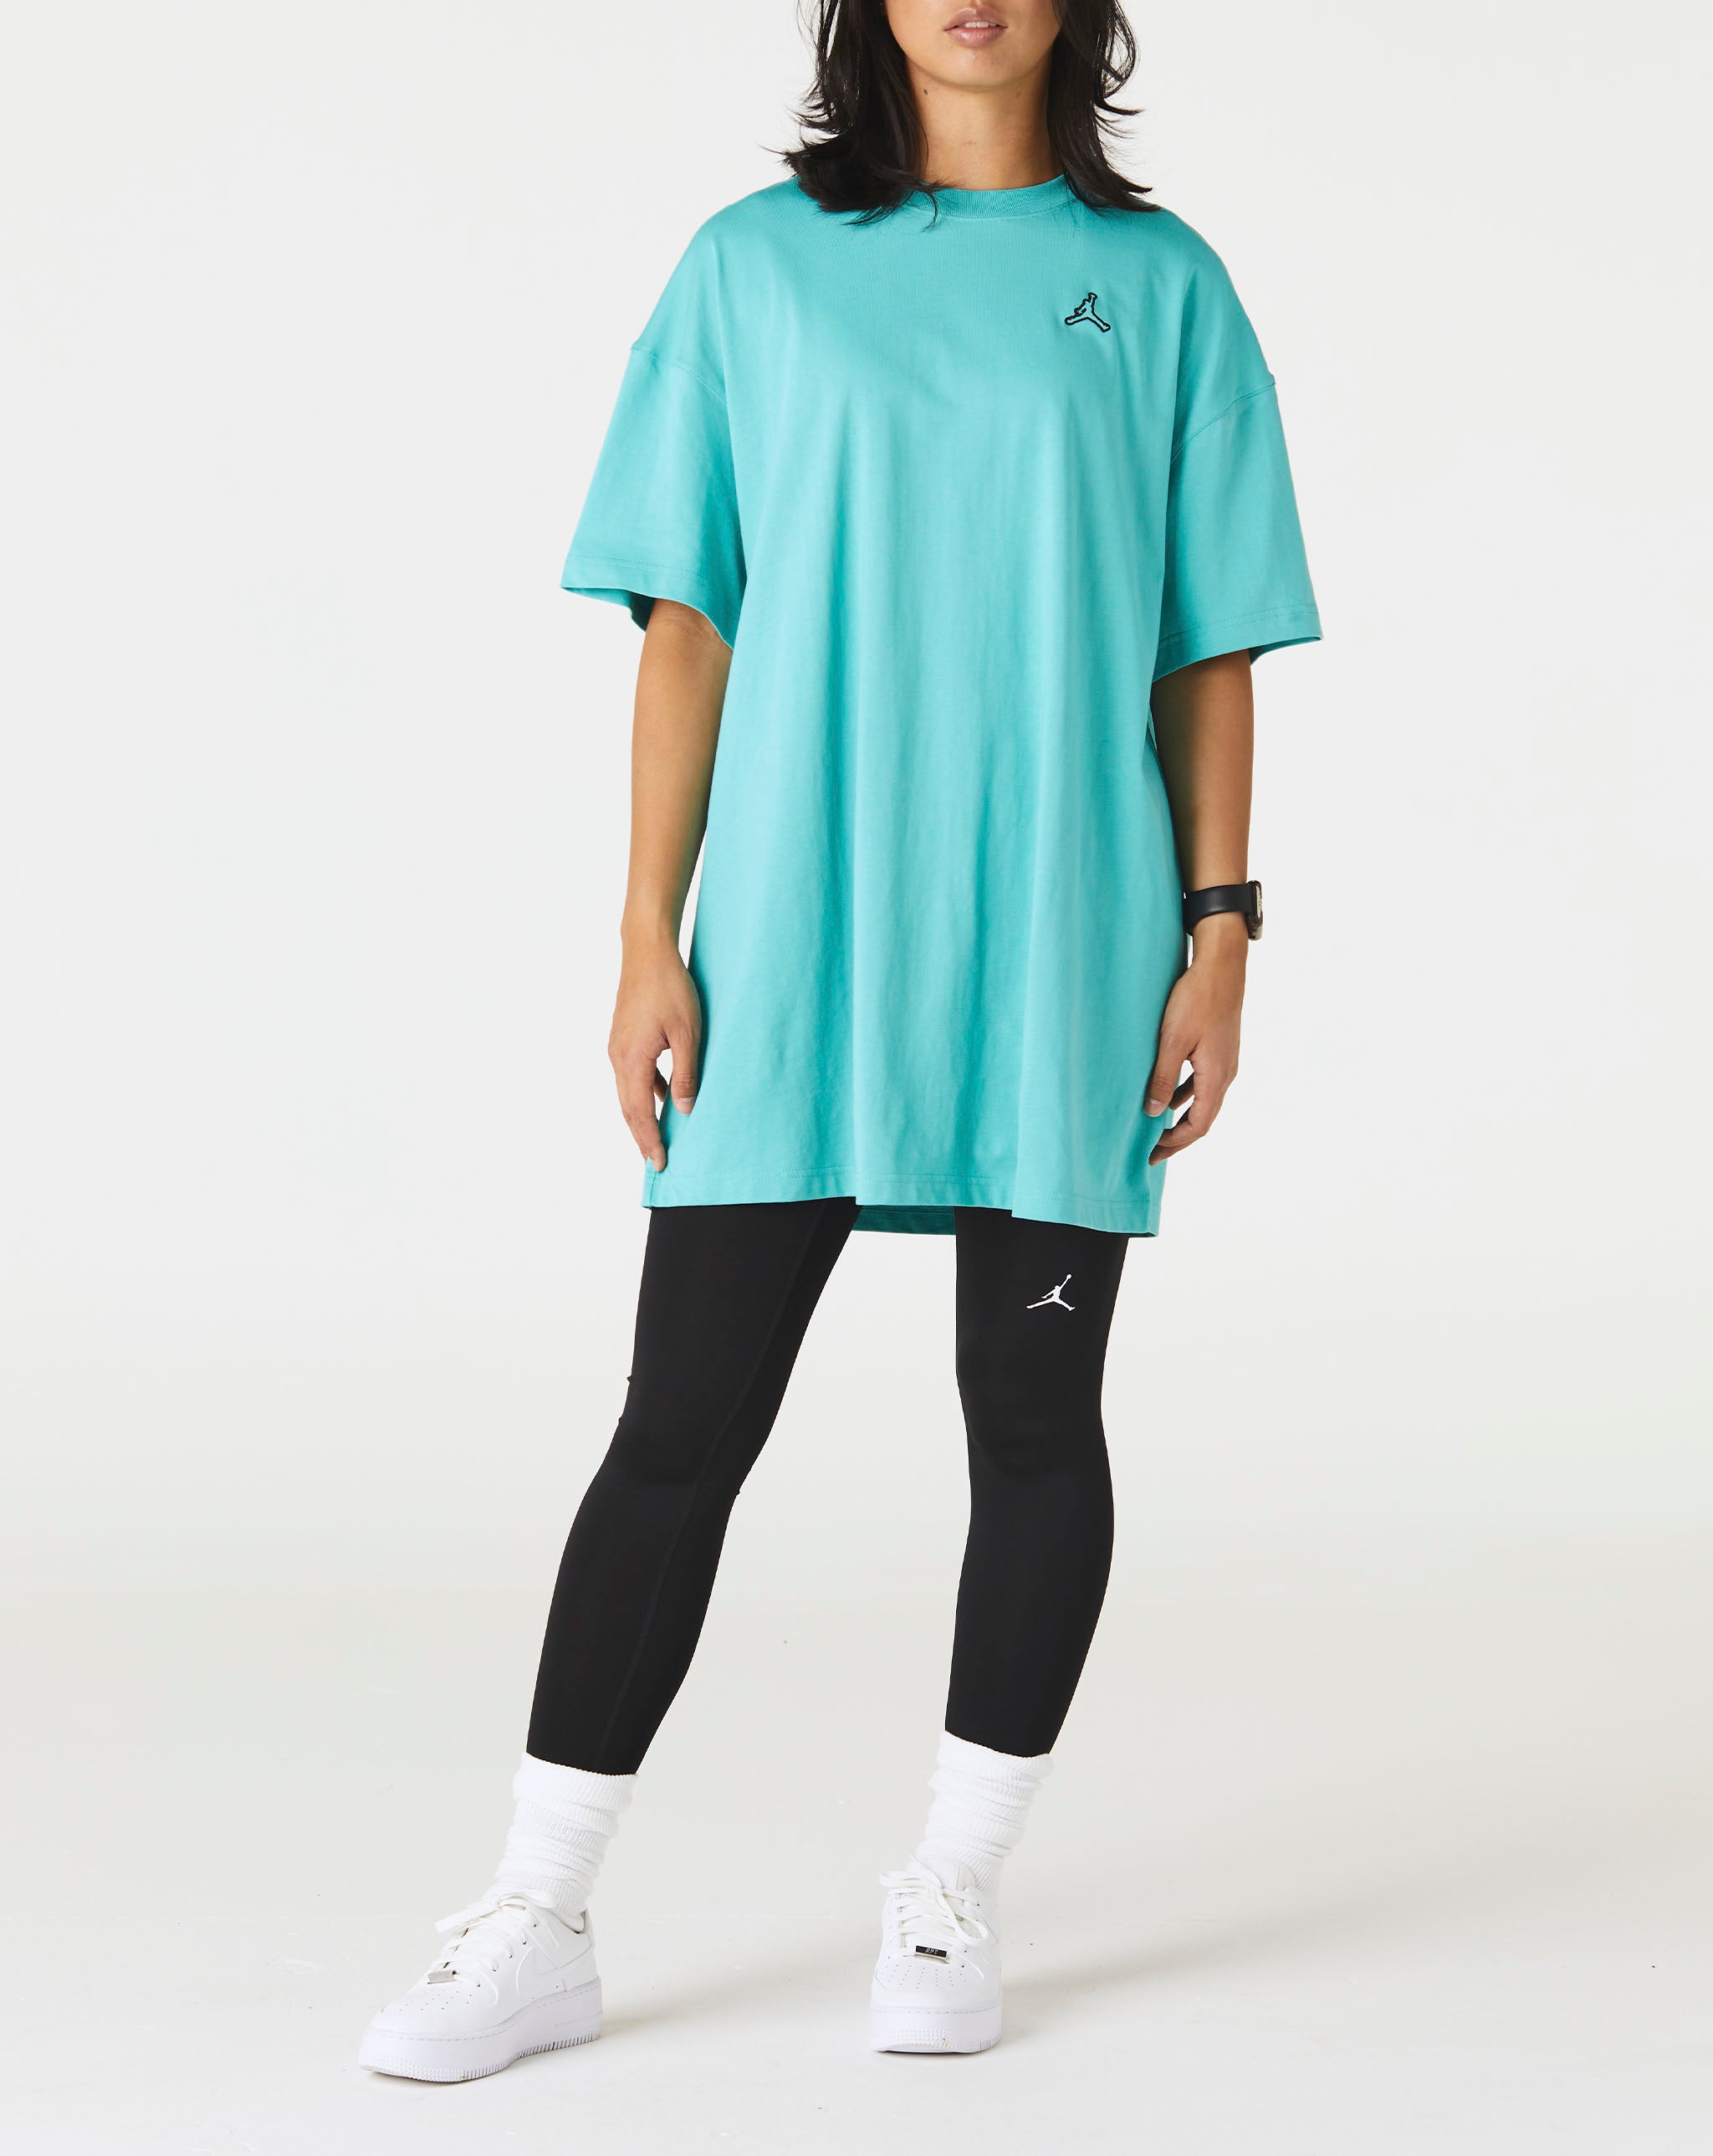 Air Jordan Women's Jordan Essentials T-Shirt Dress  - Cheap Urlfreeze Jordan outlet